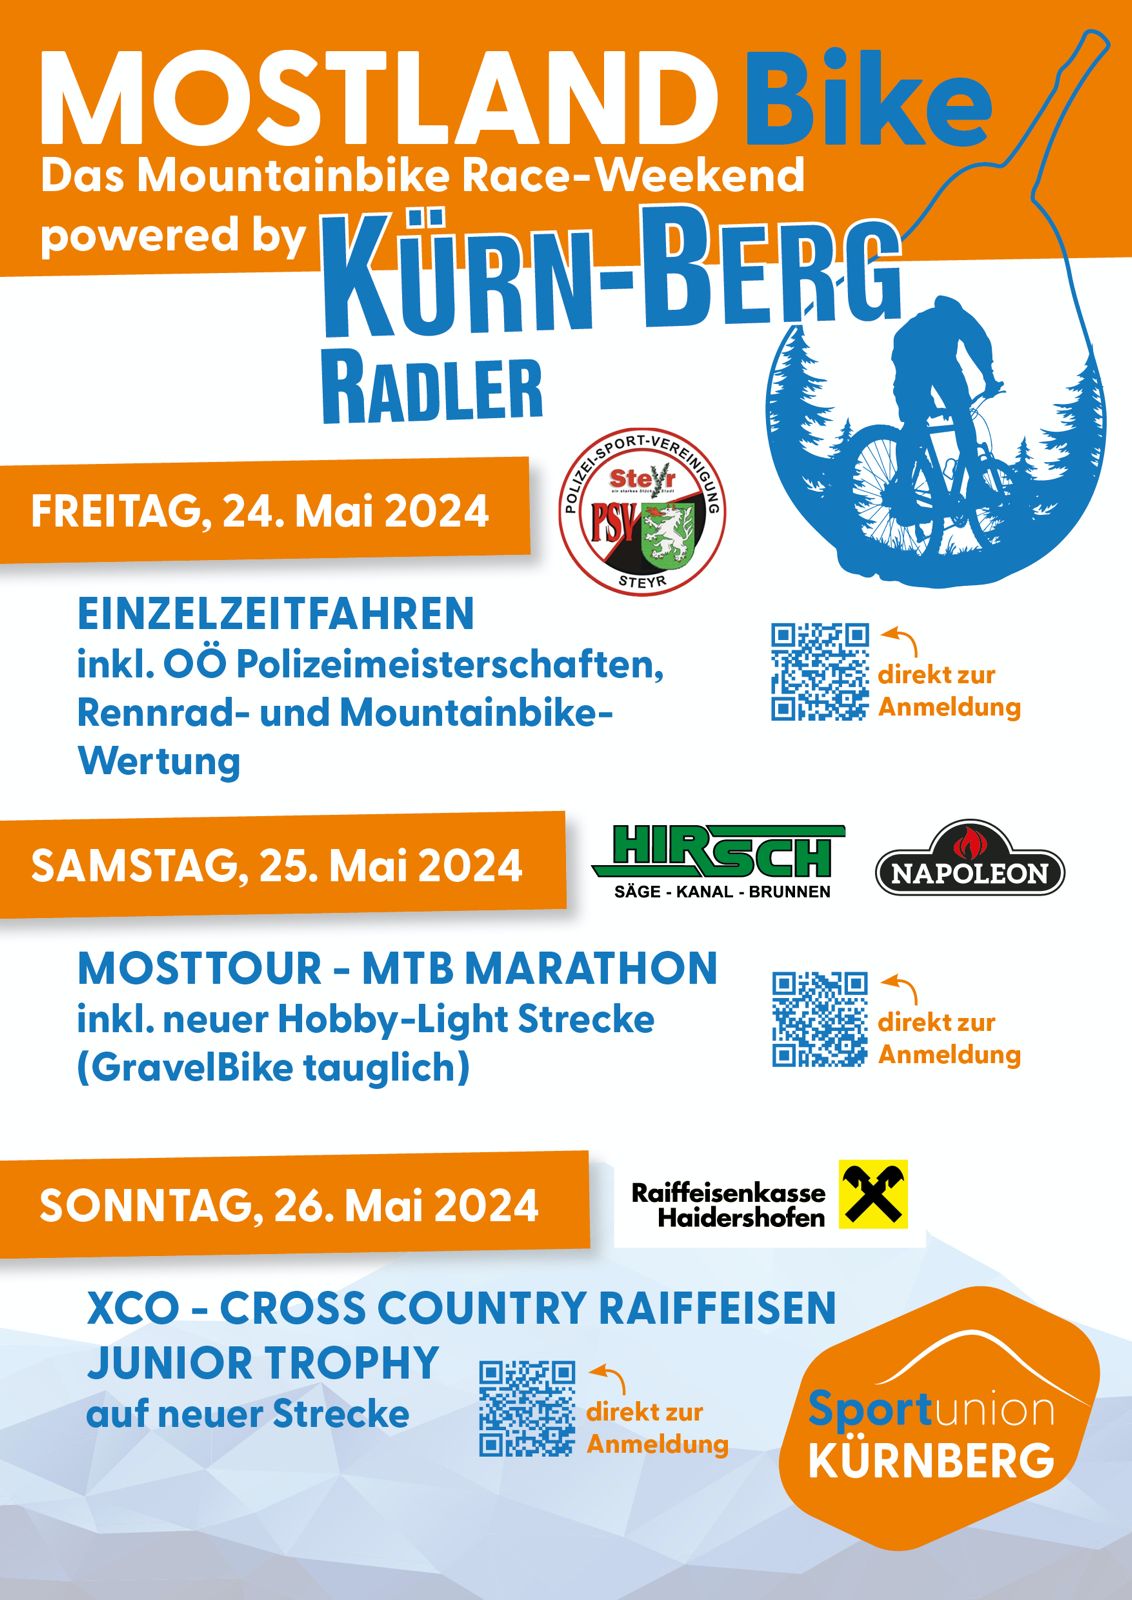 Mountainbike Race-Weekend 24. - 26 Mai 2024 in Kürnberg